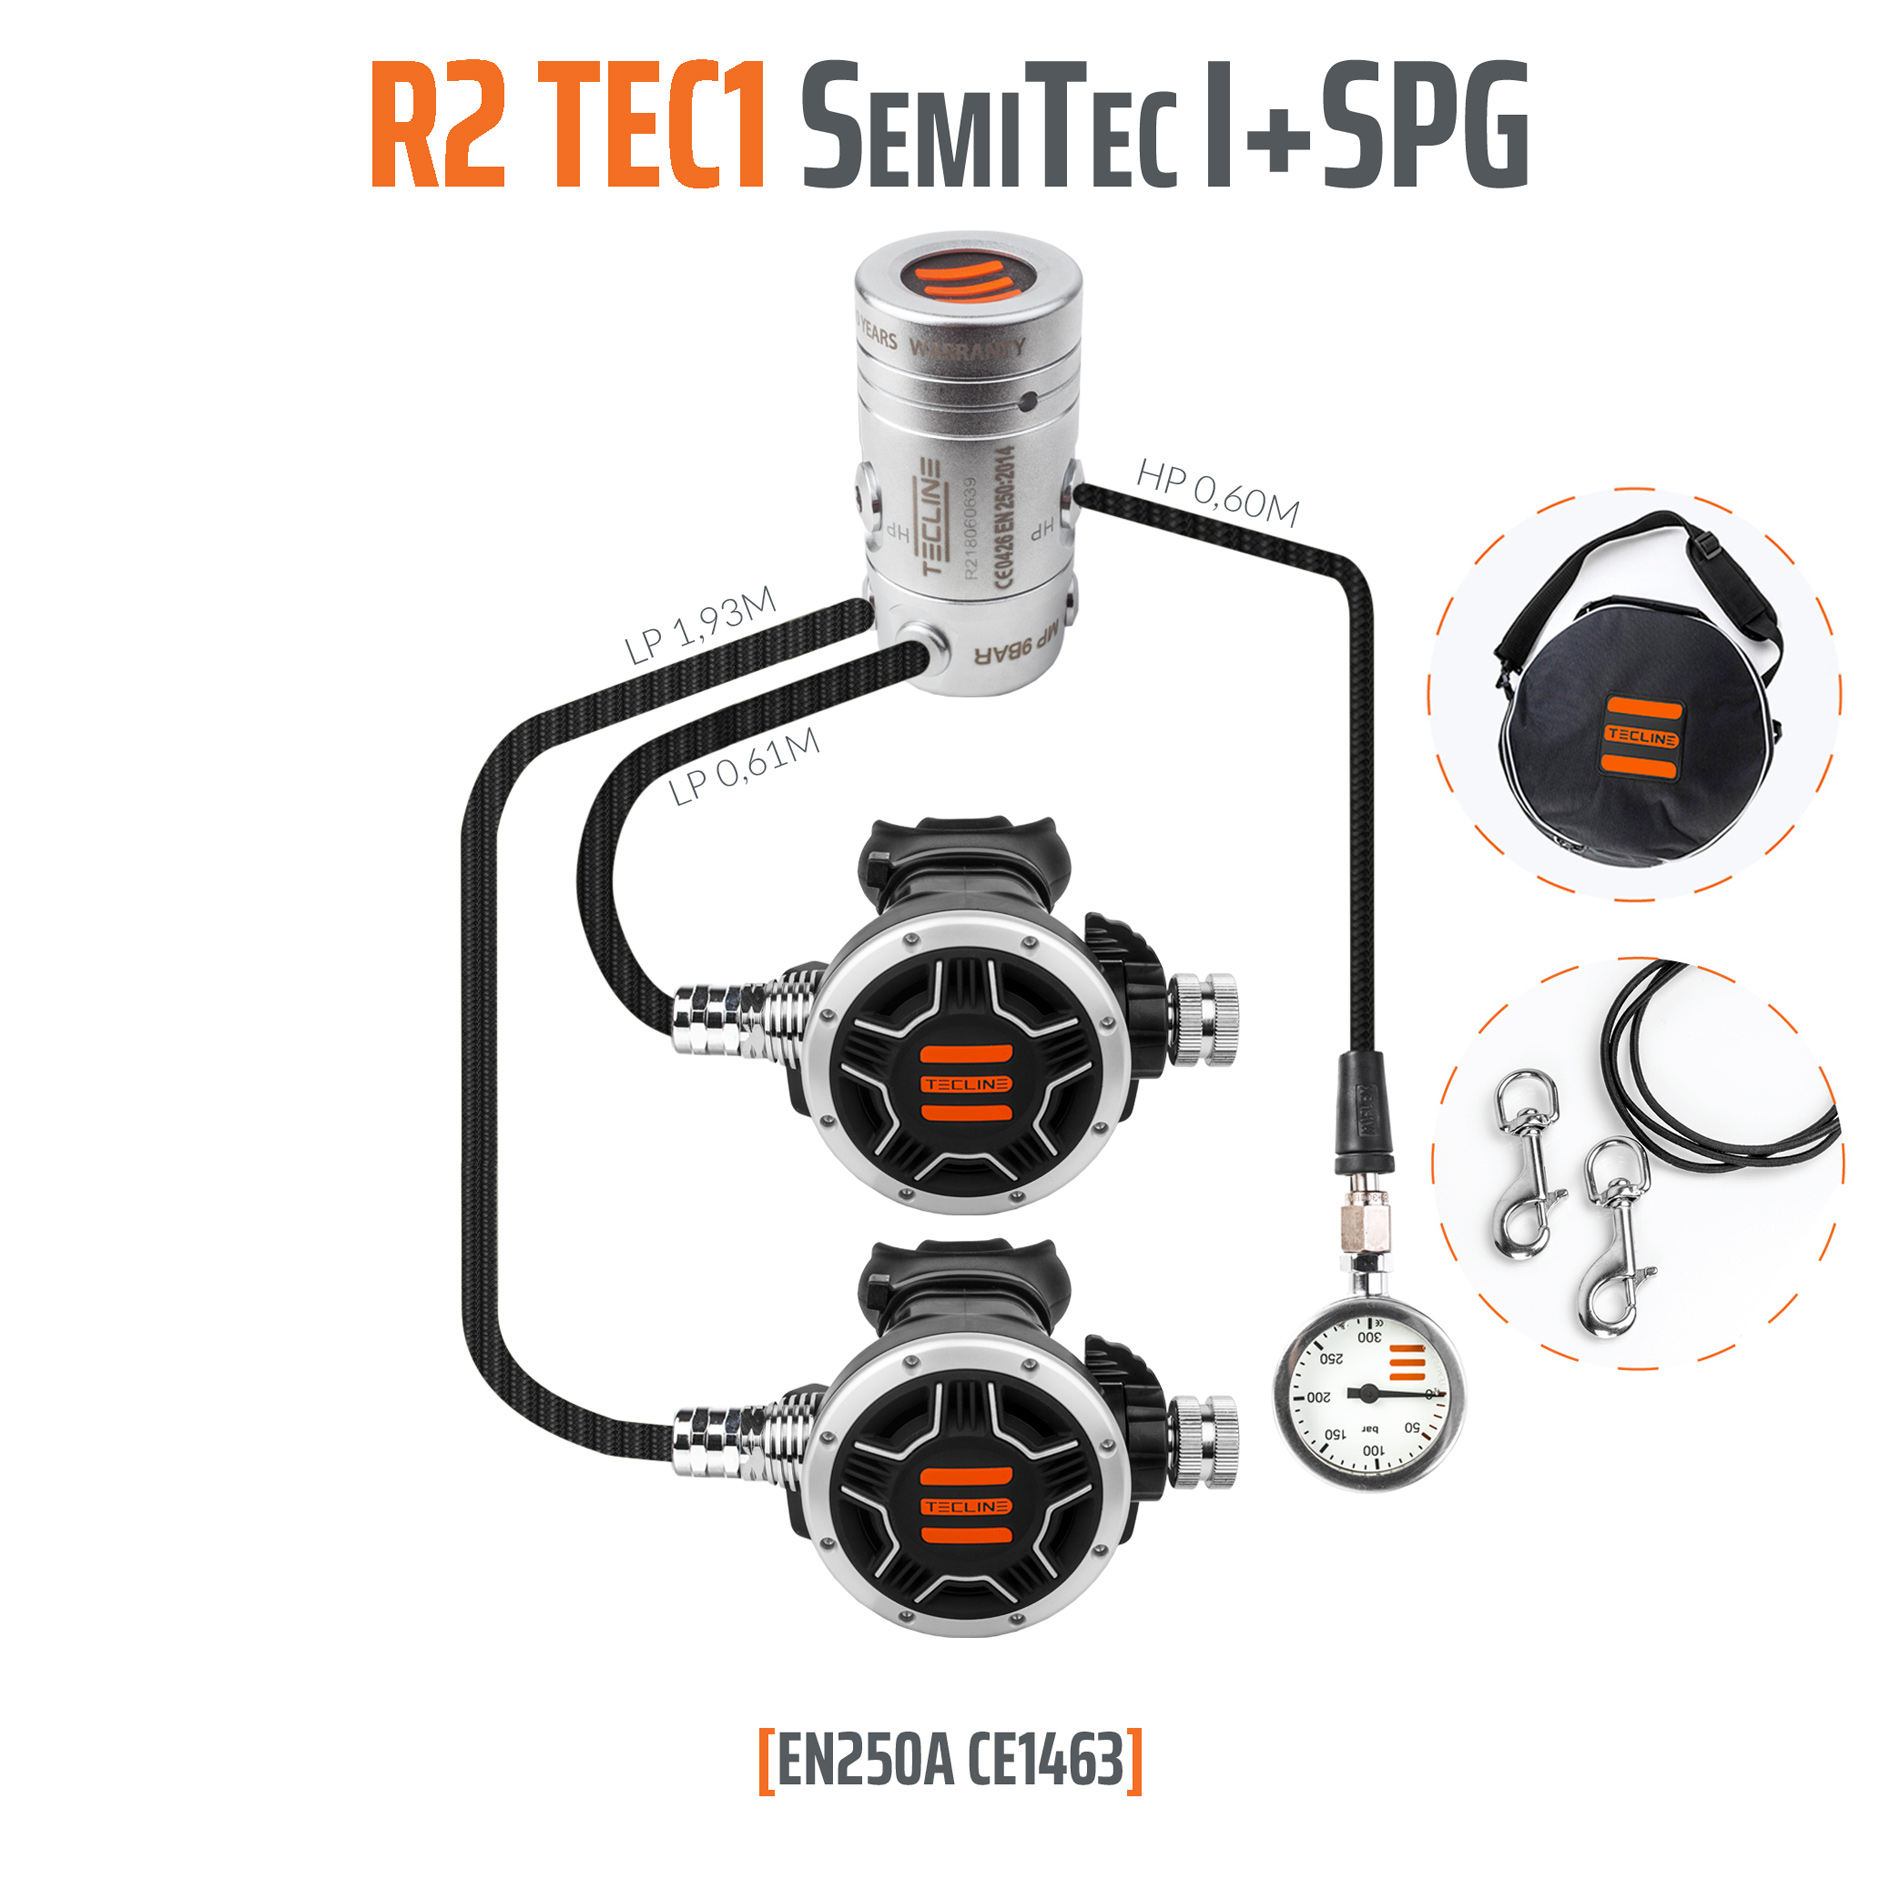 Tecline Regulator R2 TEC1 SemiTec I set with SPG – EN250A